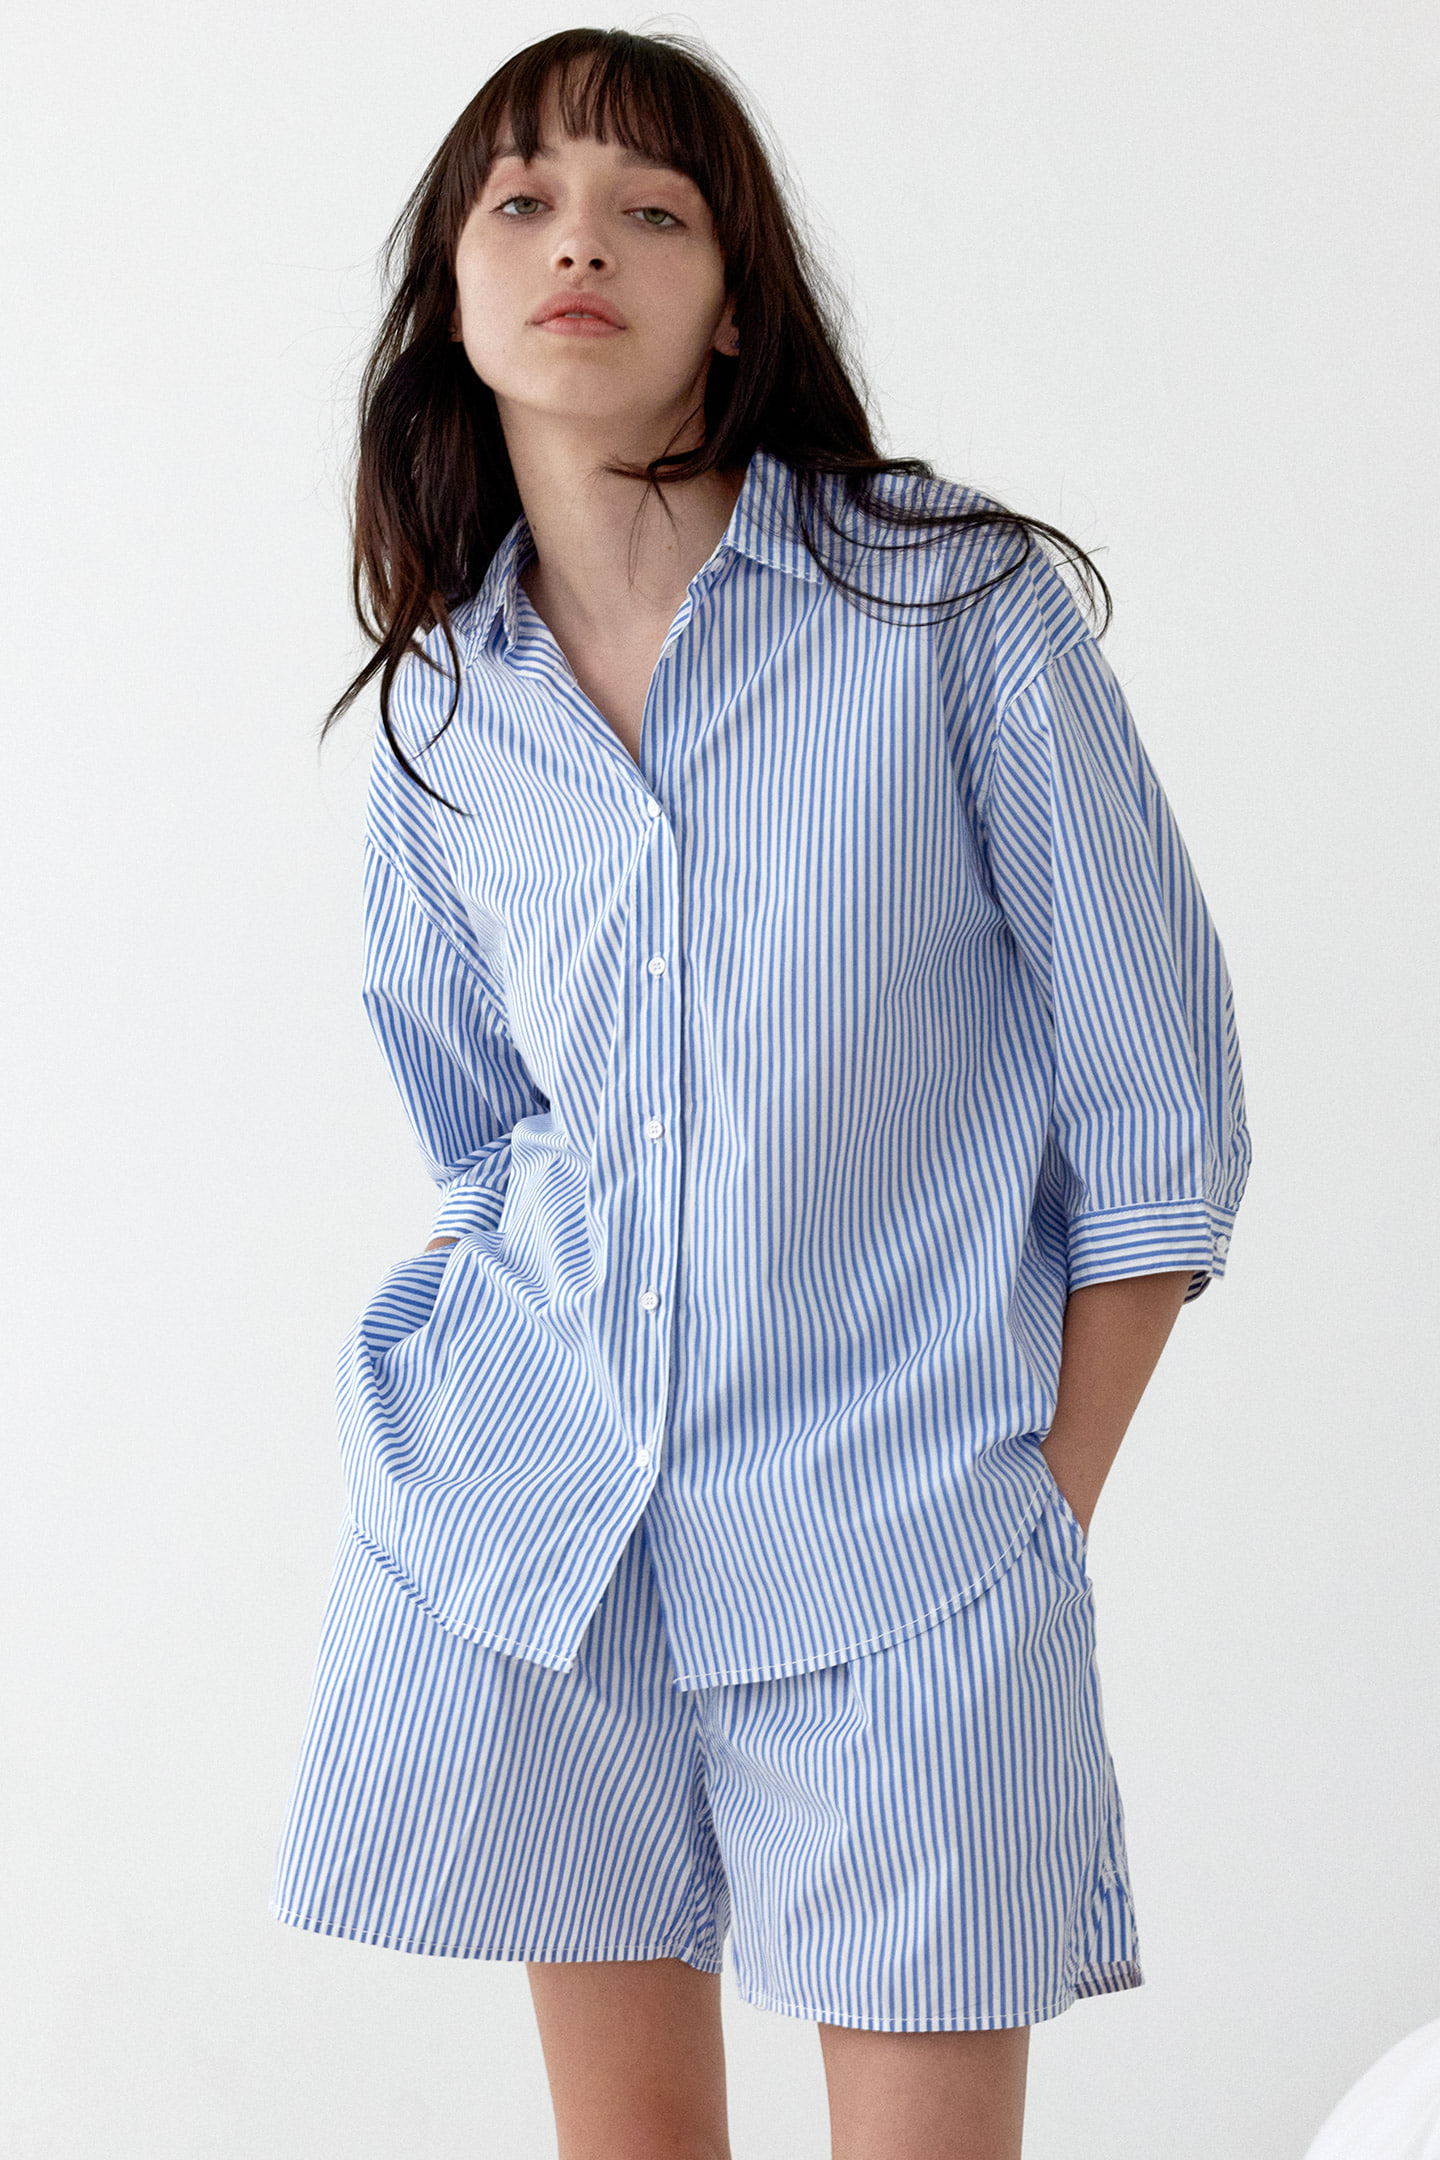 코지 스트라이프 반팔 여름 여성 잠옷 세트 반바지 셔츠 파자마 블루